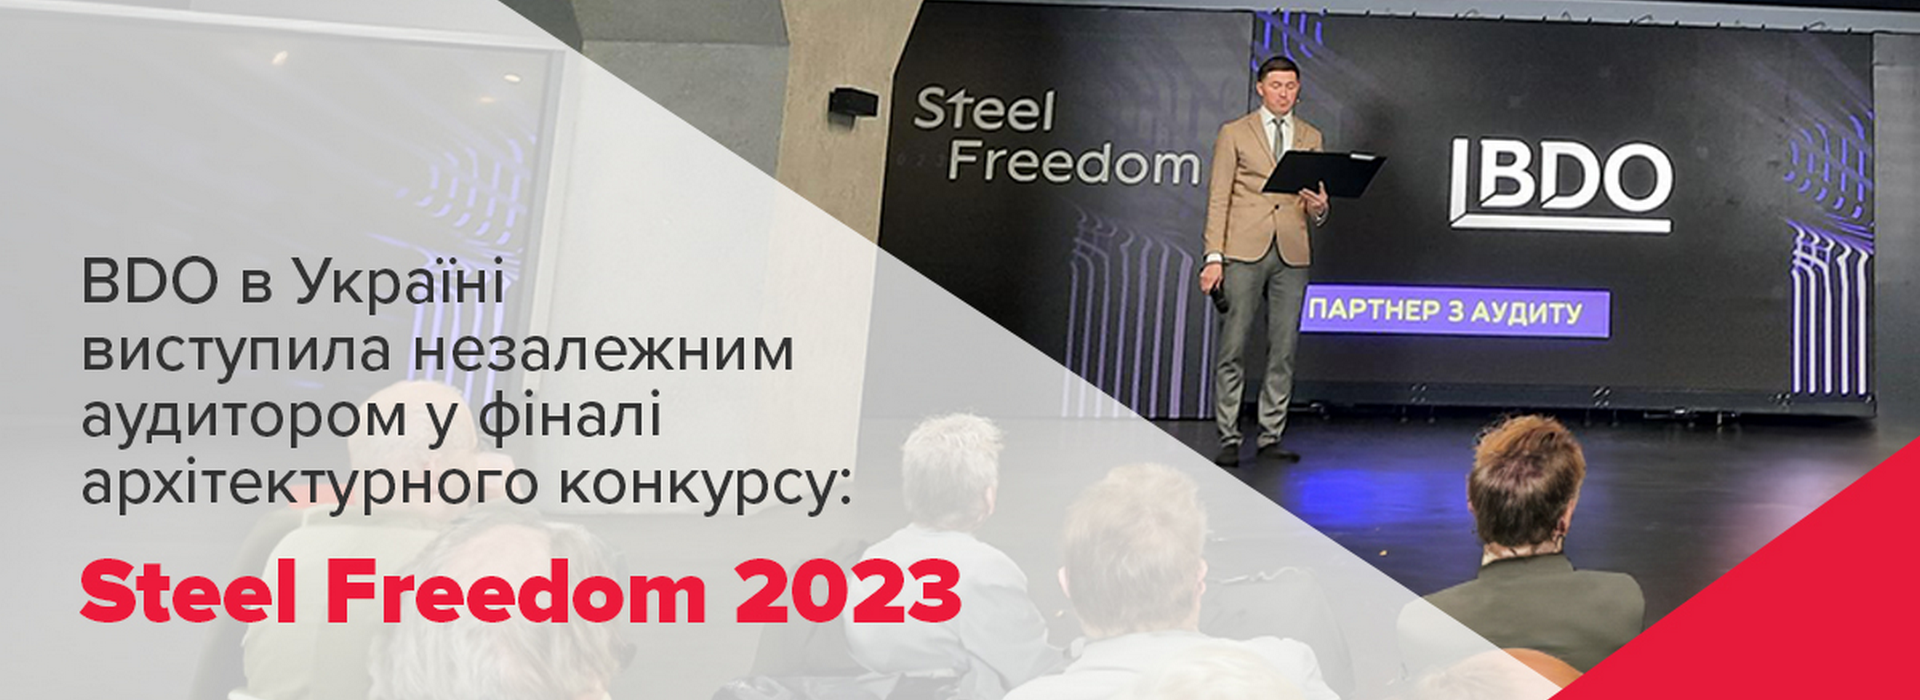 BDO в Україні виступила незалежним аудитором у фіналі архітектурного конкурсу Steel Freedom 2023